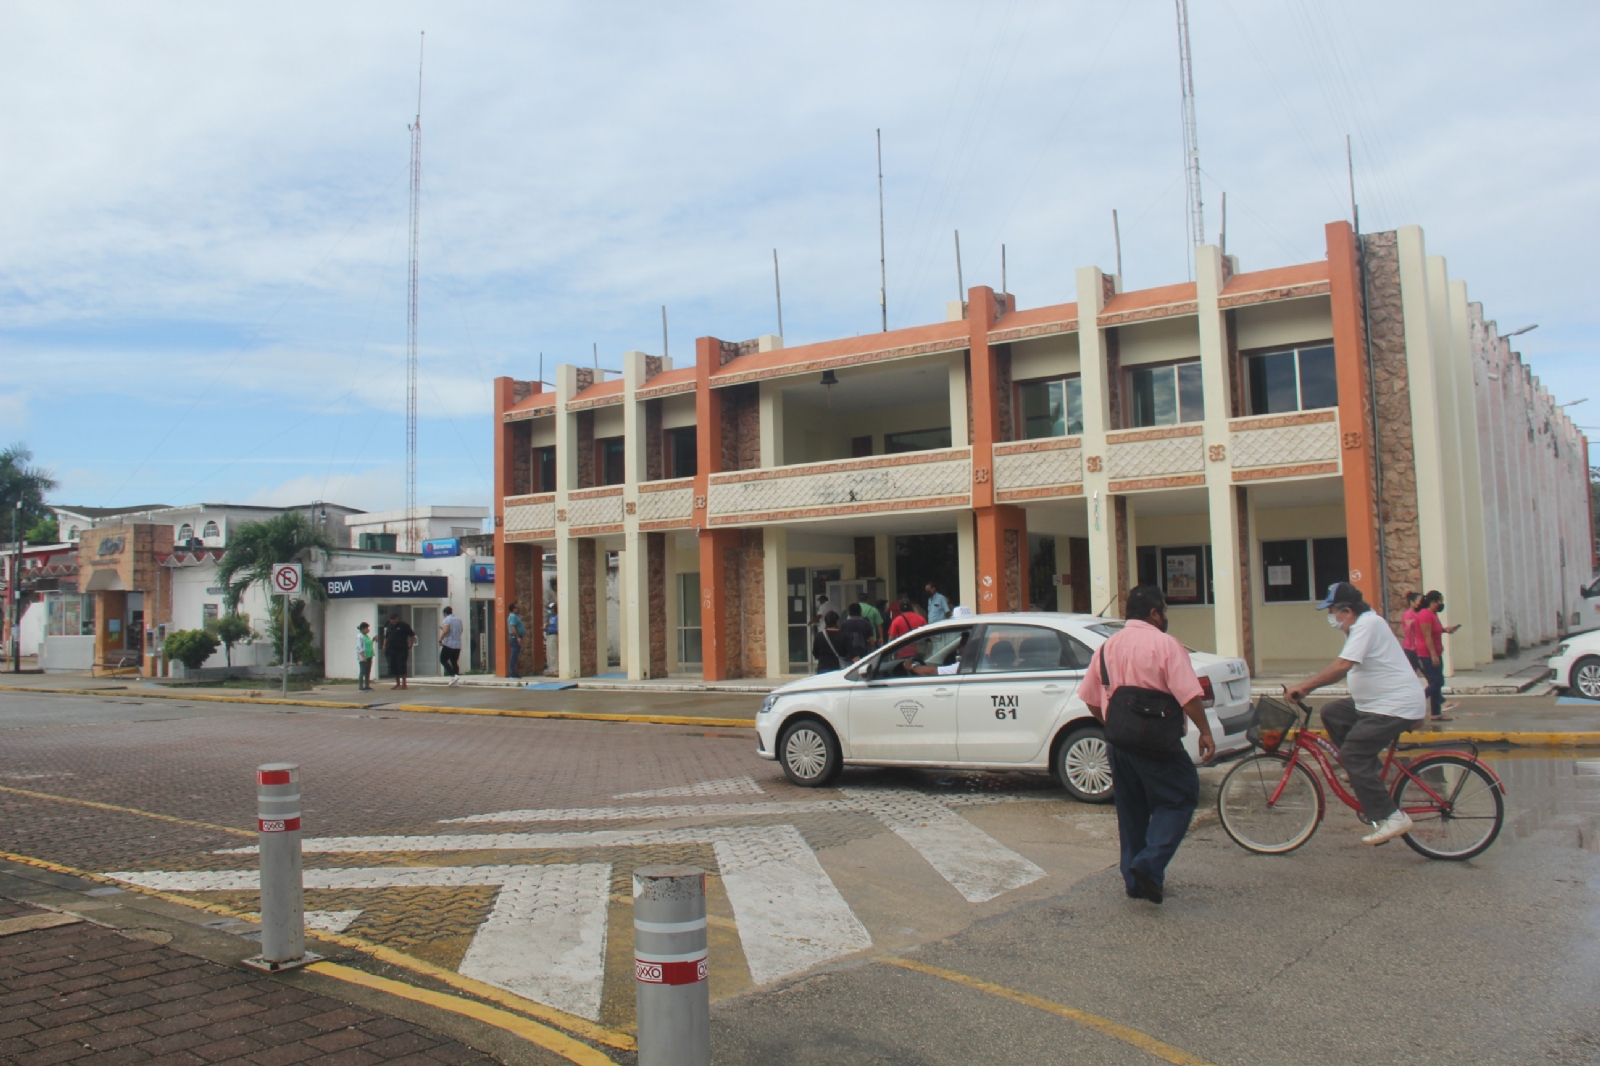 Subdelegados de Carrillo Puerto exigen pago atrasado de prestaciones laborales